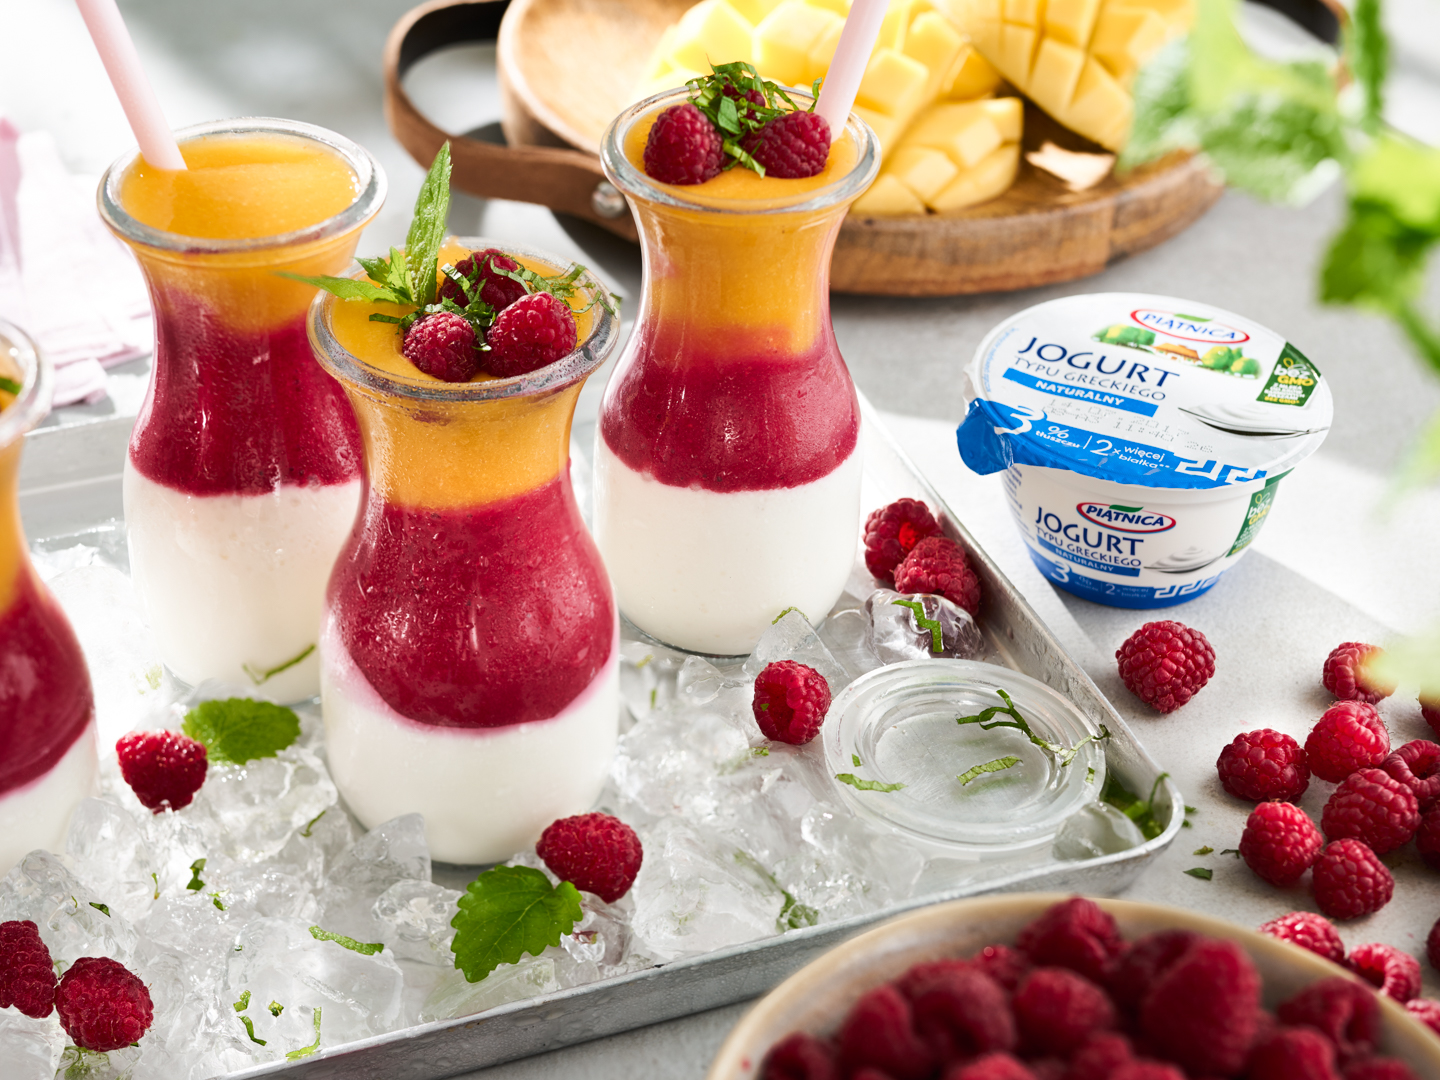 Lato pod znakiem jogurtów naturalnych od OSM Piątnica